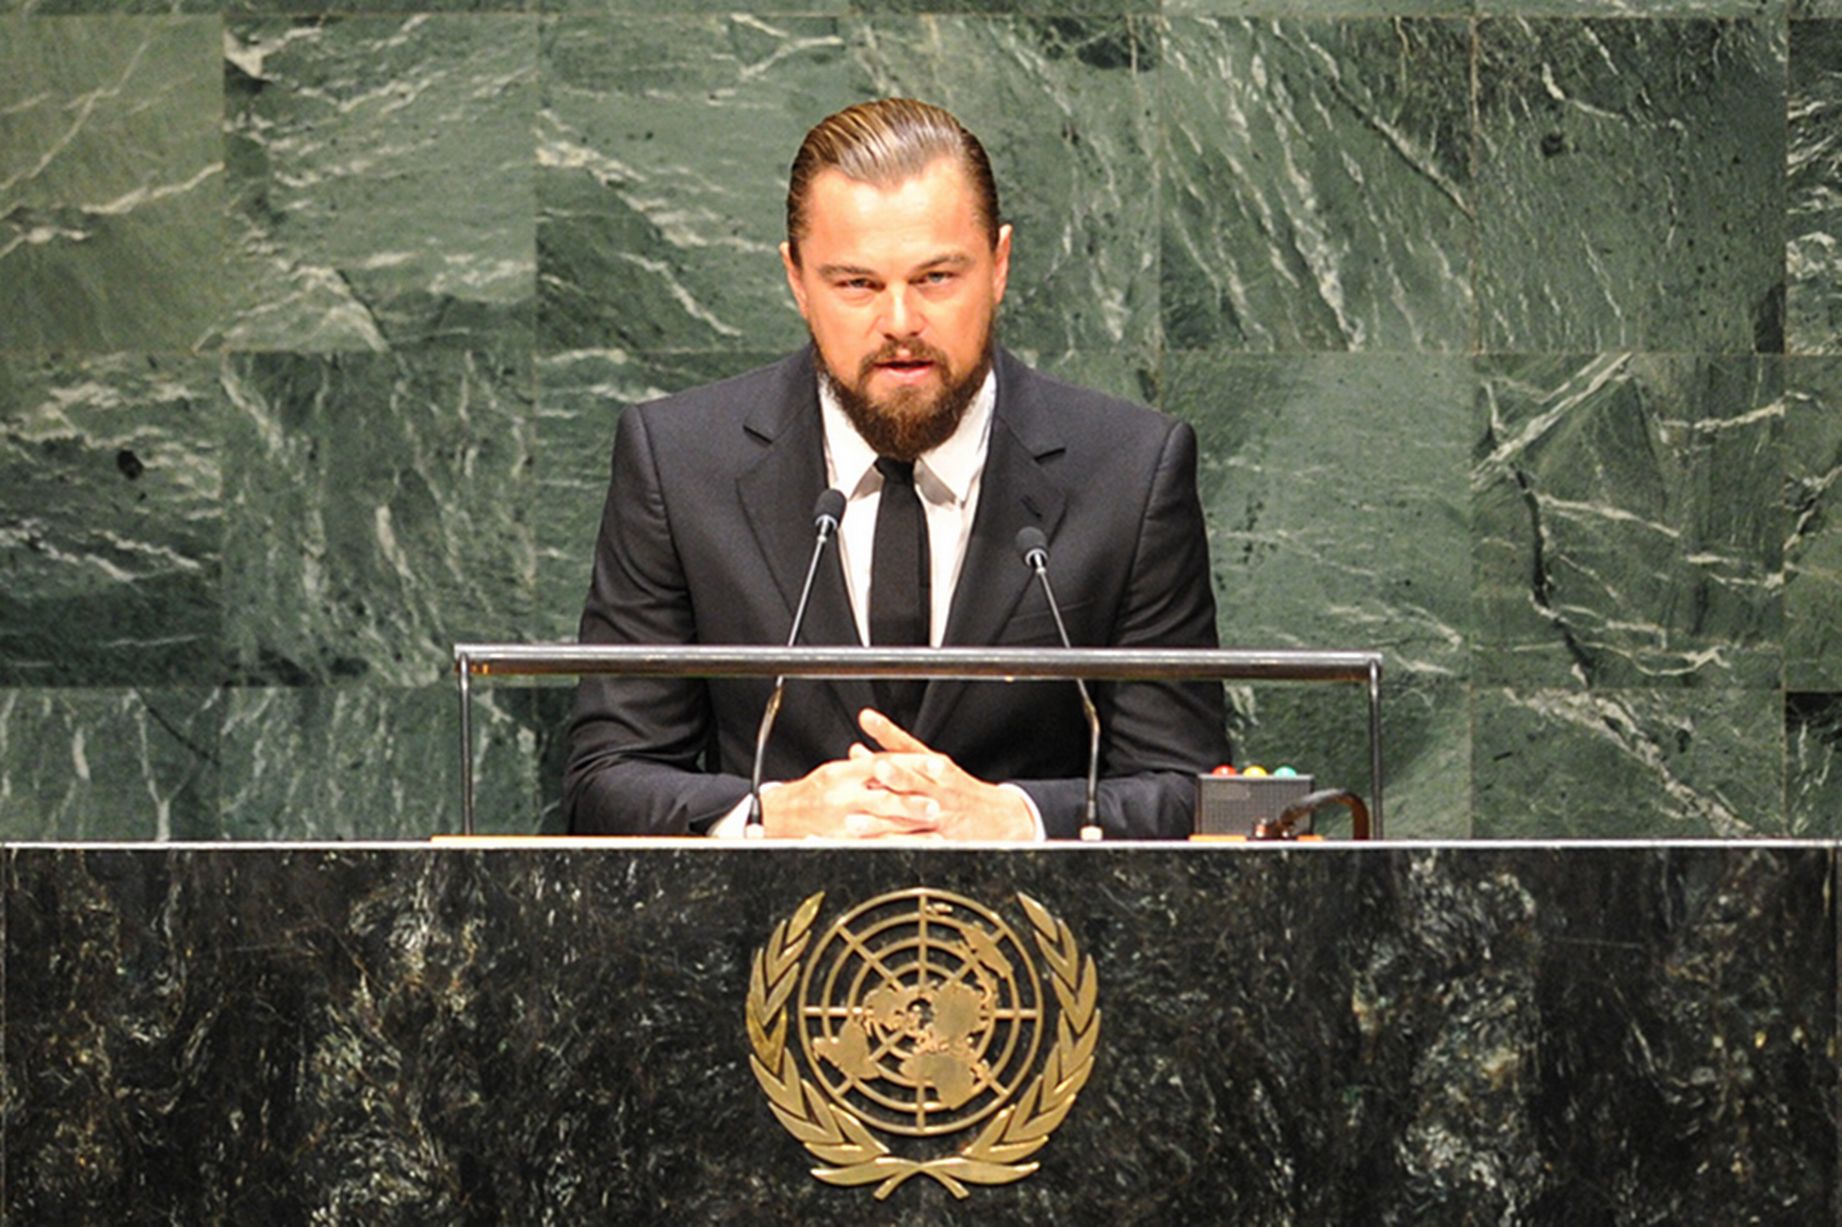  Leonardo DiCaprio aboga por la Tierra en la ONU